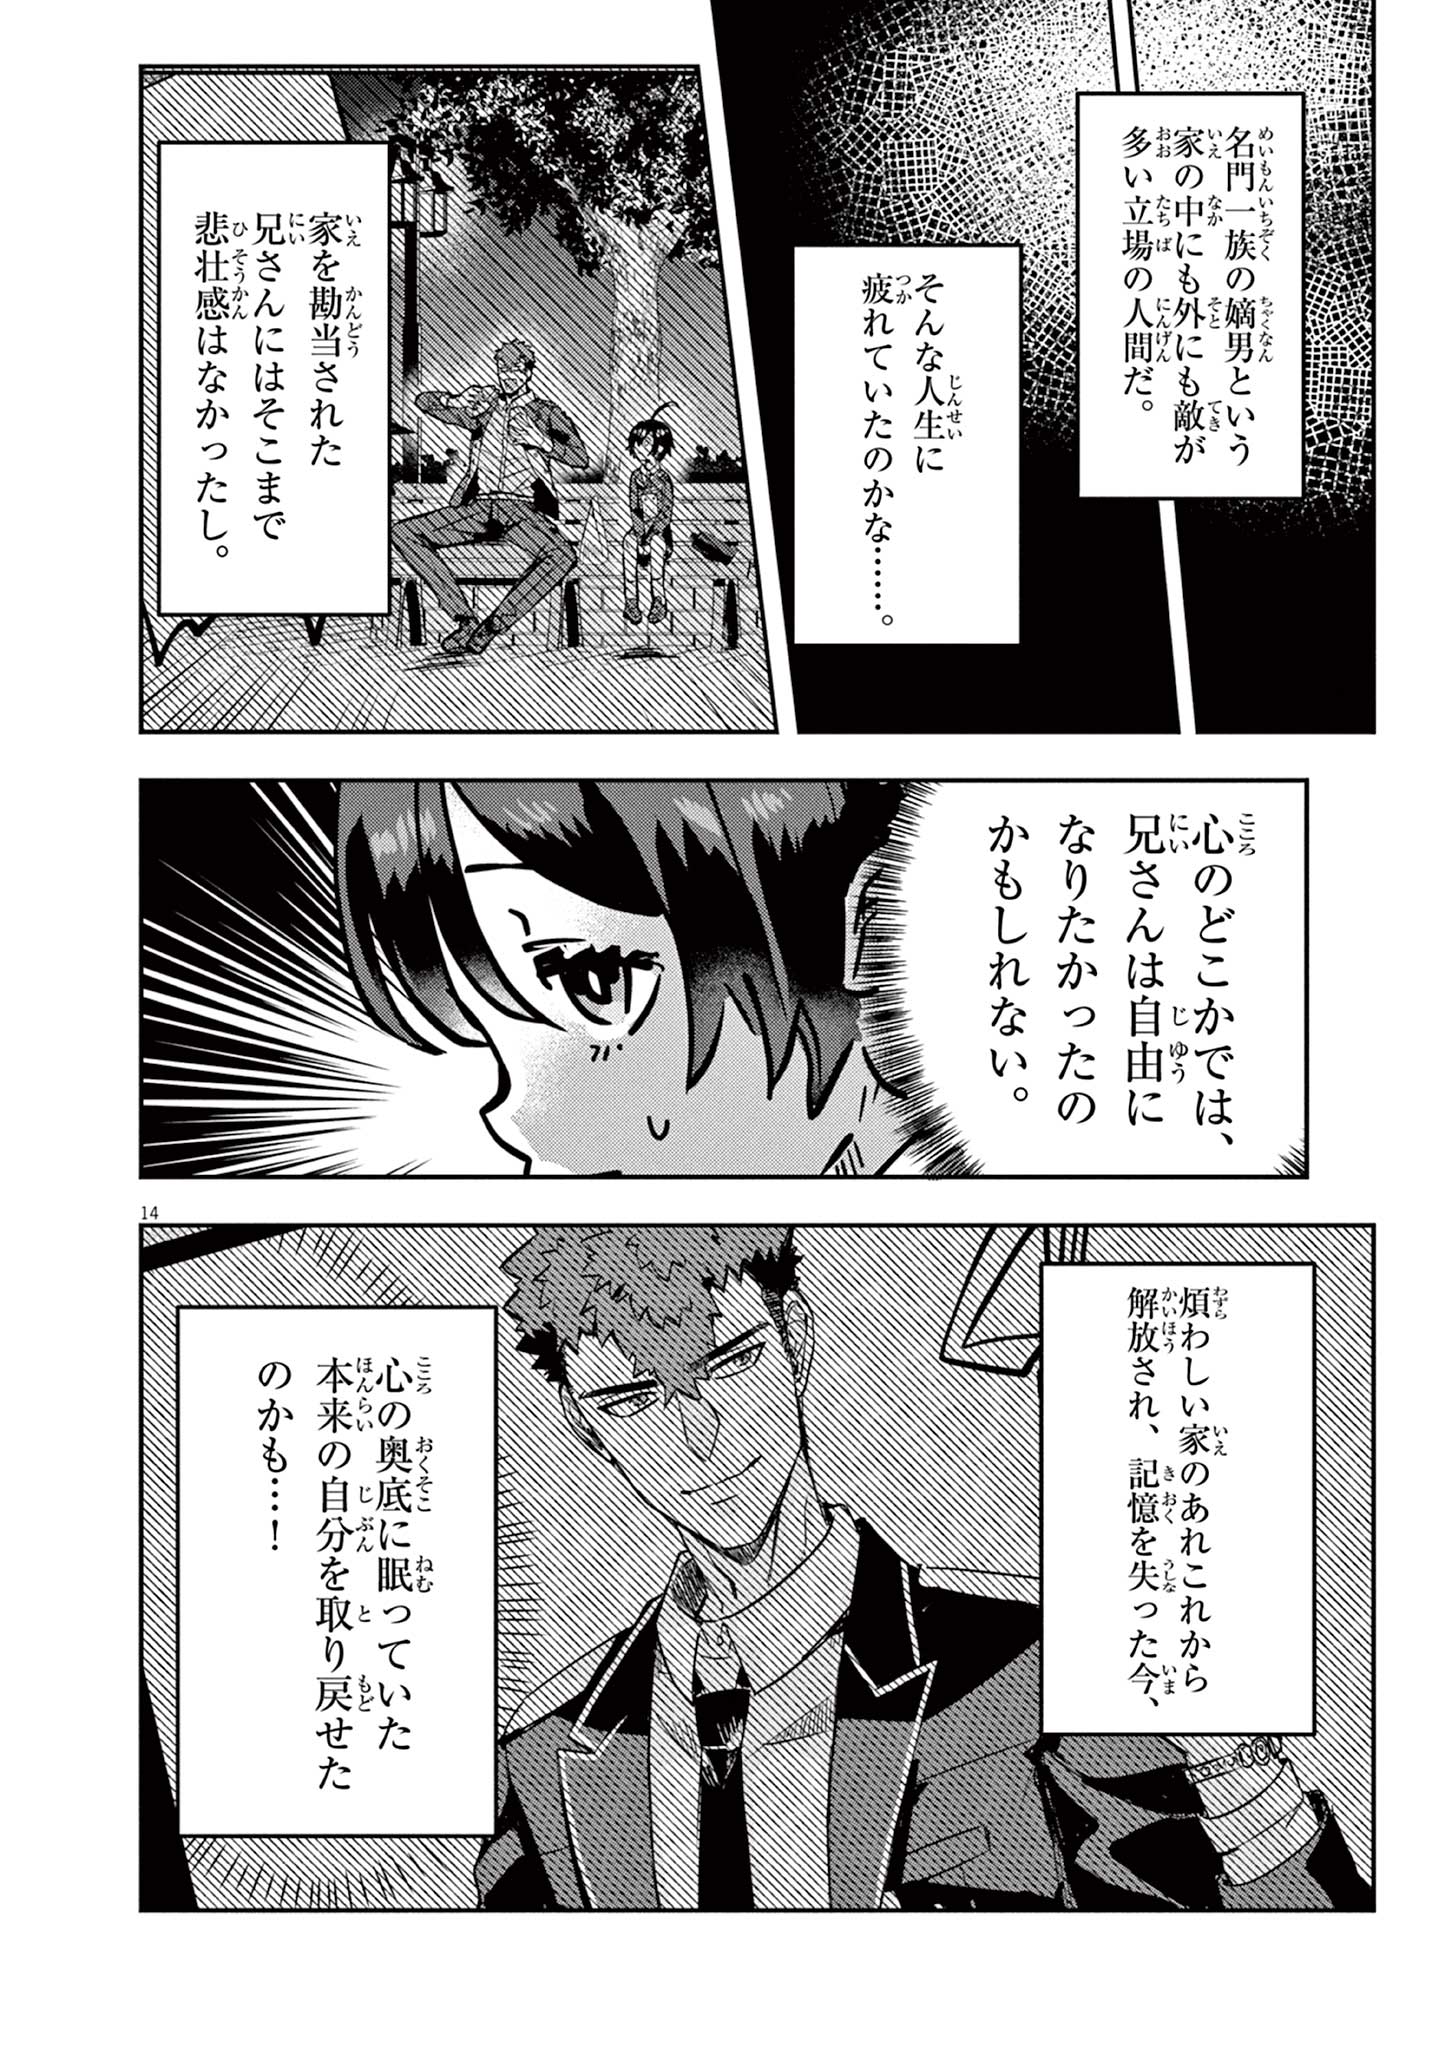 Nichiasa Suki no Otaku ga Akuyaku Seito ni Tenseishita Kekka, Hametsu Flag ga Houkaishiteiku Ken ni Tsuite - Chapter 7.1 - Page 14